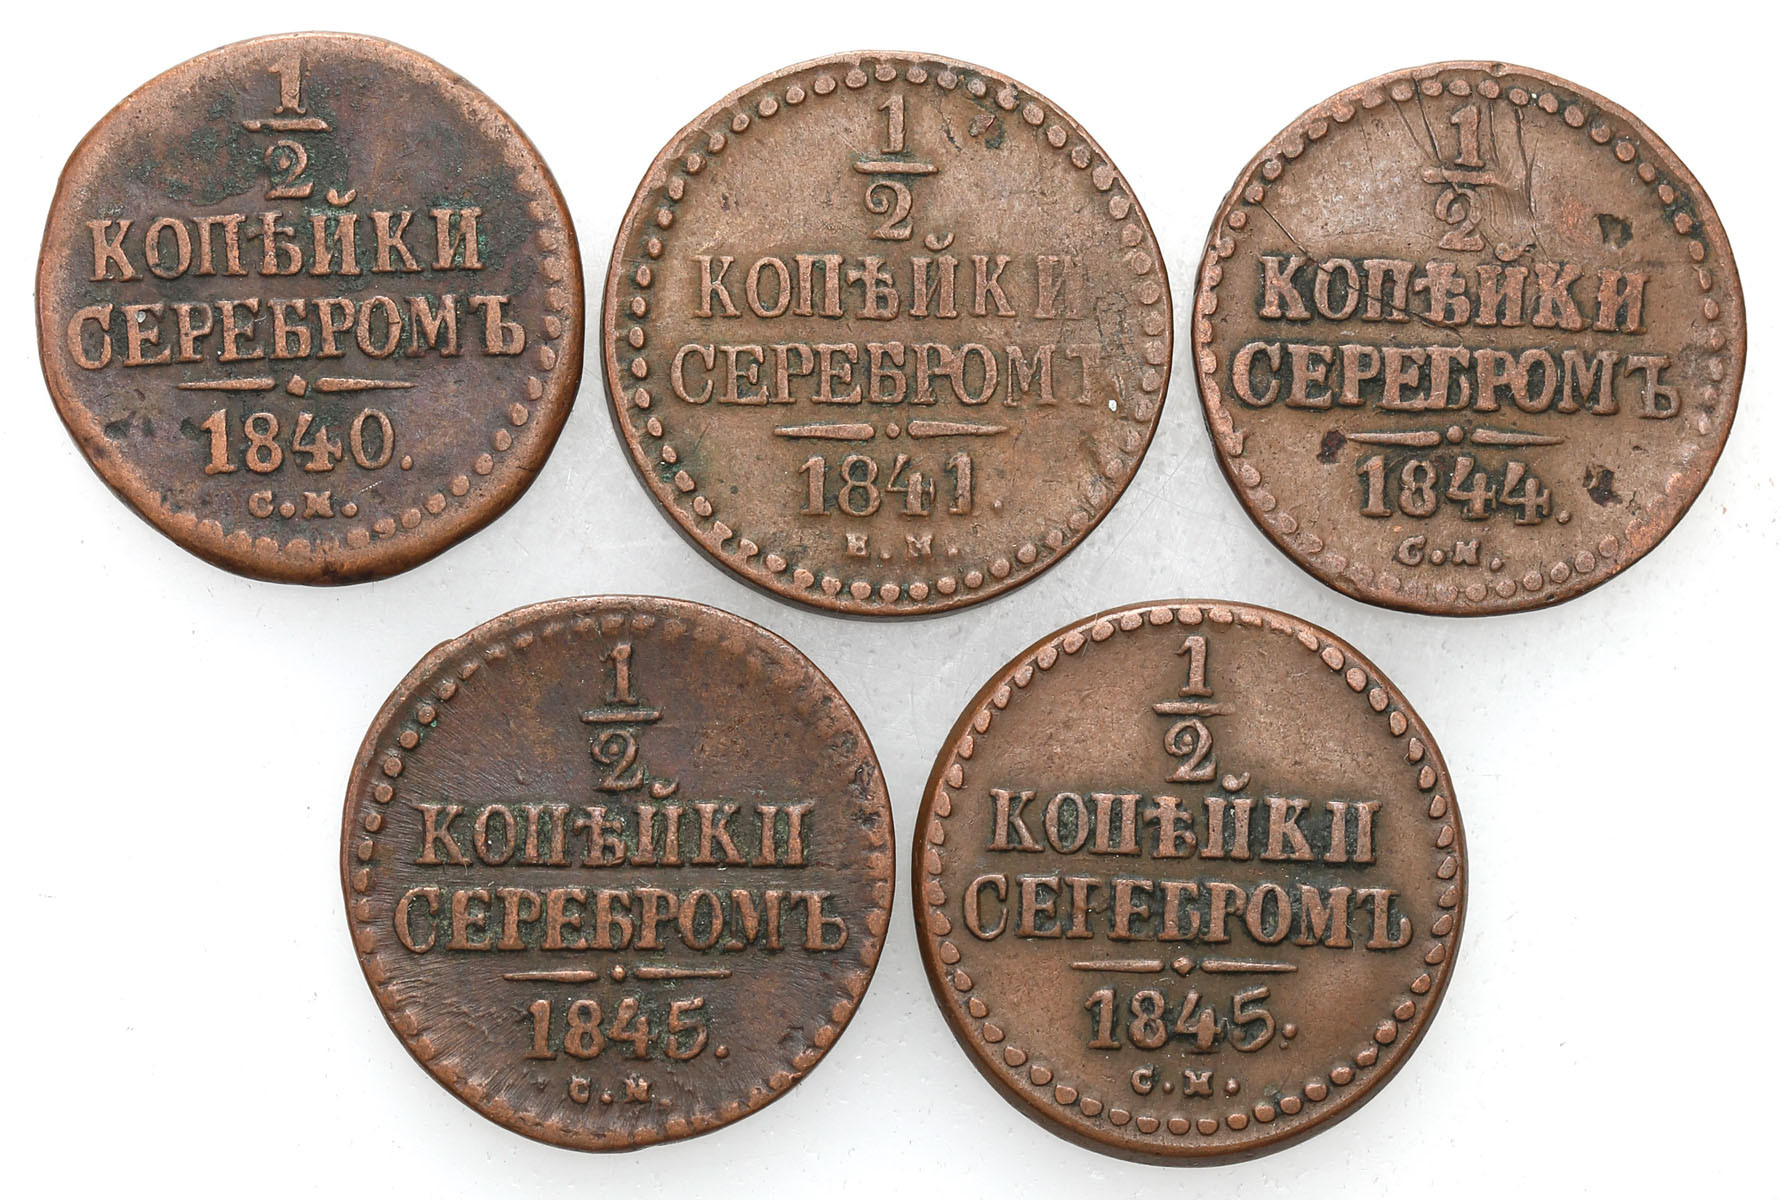 Rosja, Mikołaj I. 1/2 kopiejki 1841 EM, Jekaterinburg, 1840-1845, CПM, Iżorsk, zestaw 5 monet